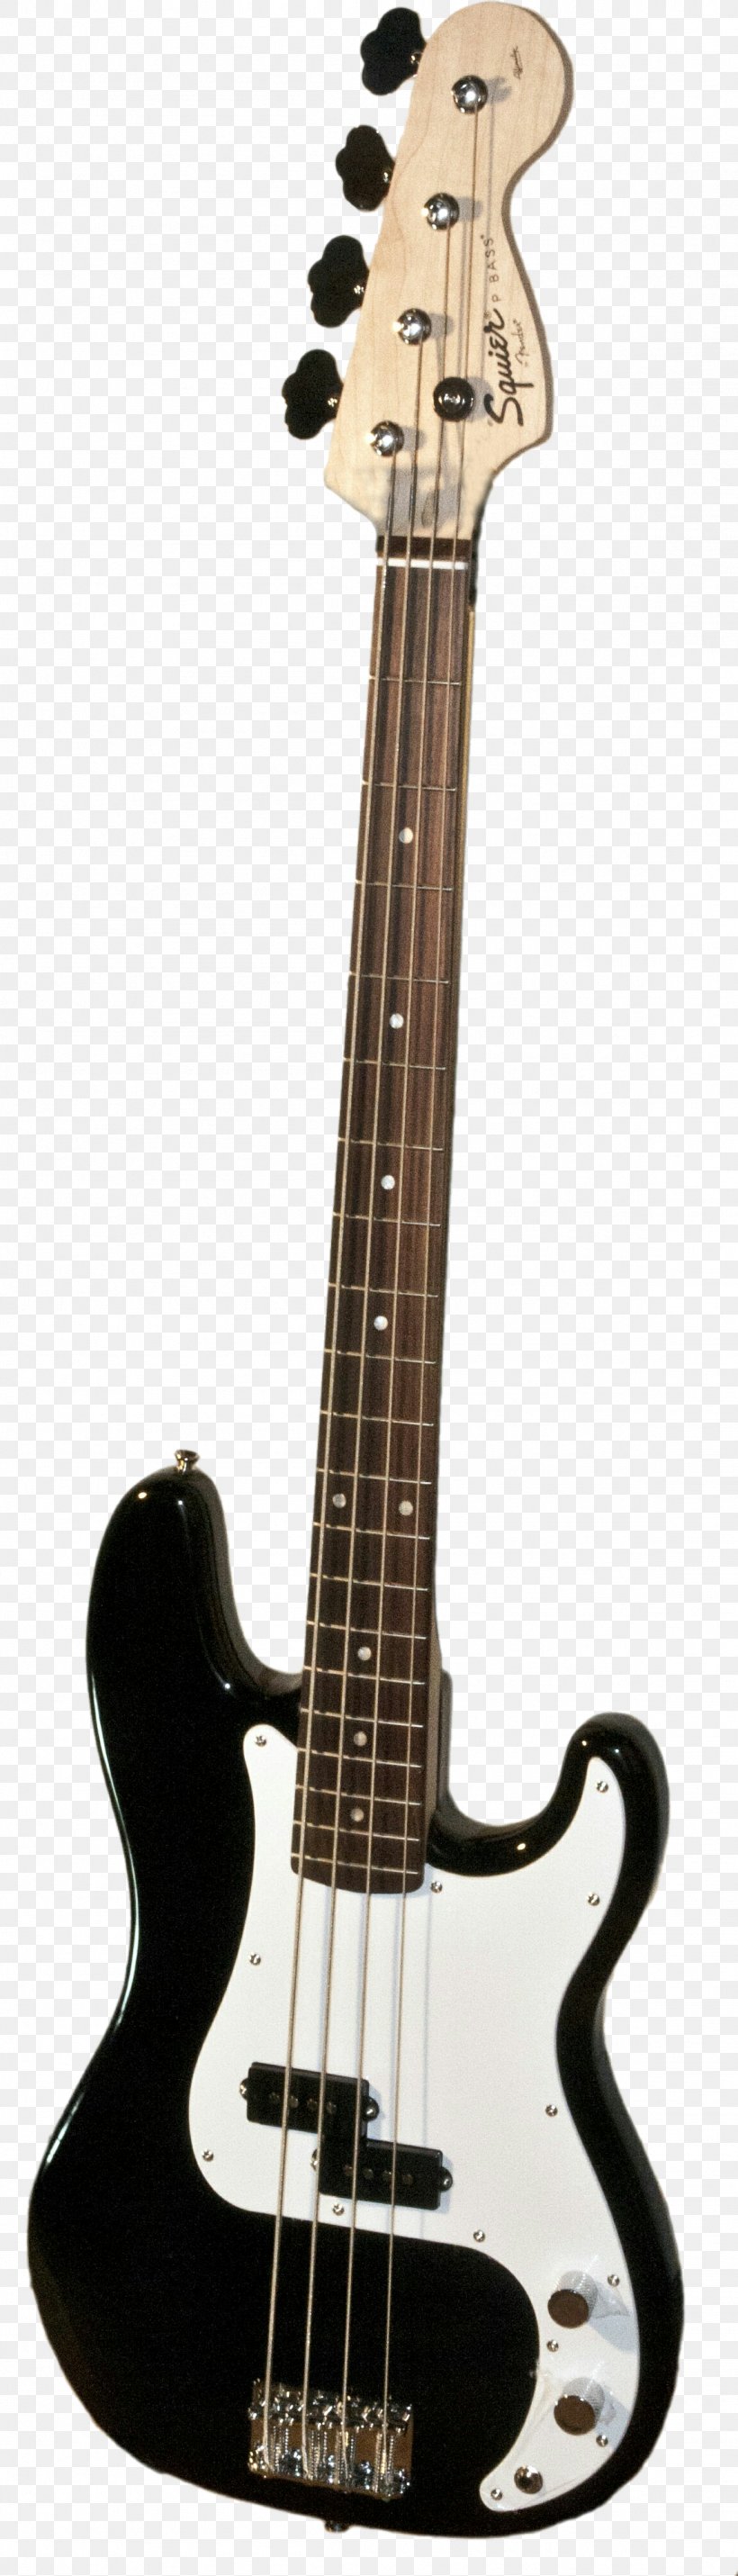 Fender Precision Bass Fender Performer Bass Guitar Amplifier Fender Jazz Bass Bass Guitar, PNG, 1152x4020px, Fender Precision Bass, Acoustic Electric Guitar, Bass, Bass Guitar, Bass Violin Download Free